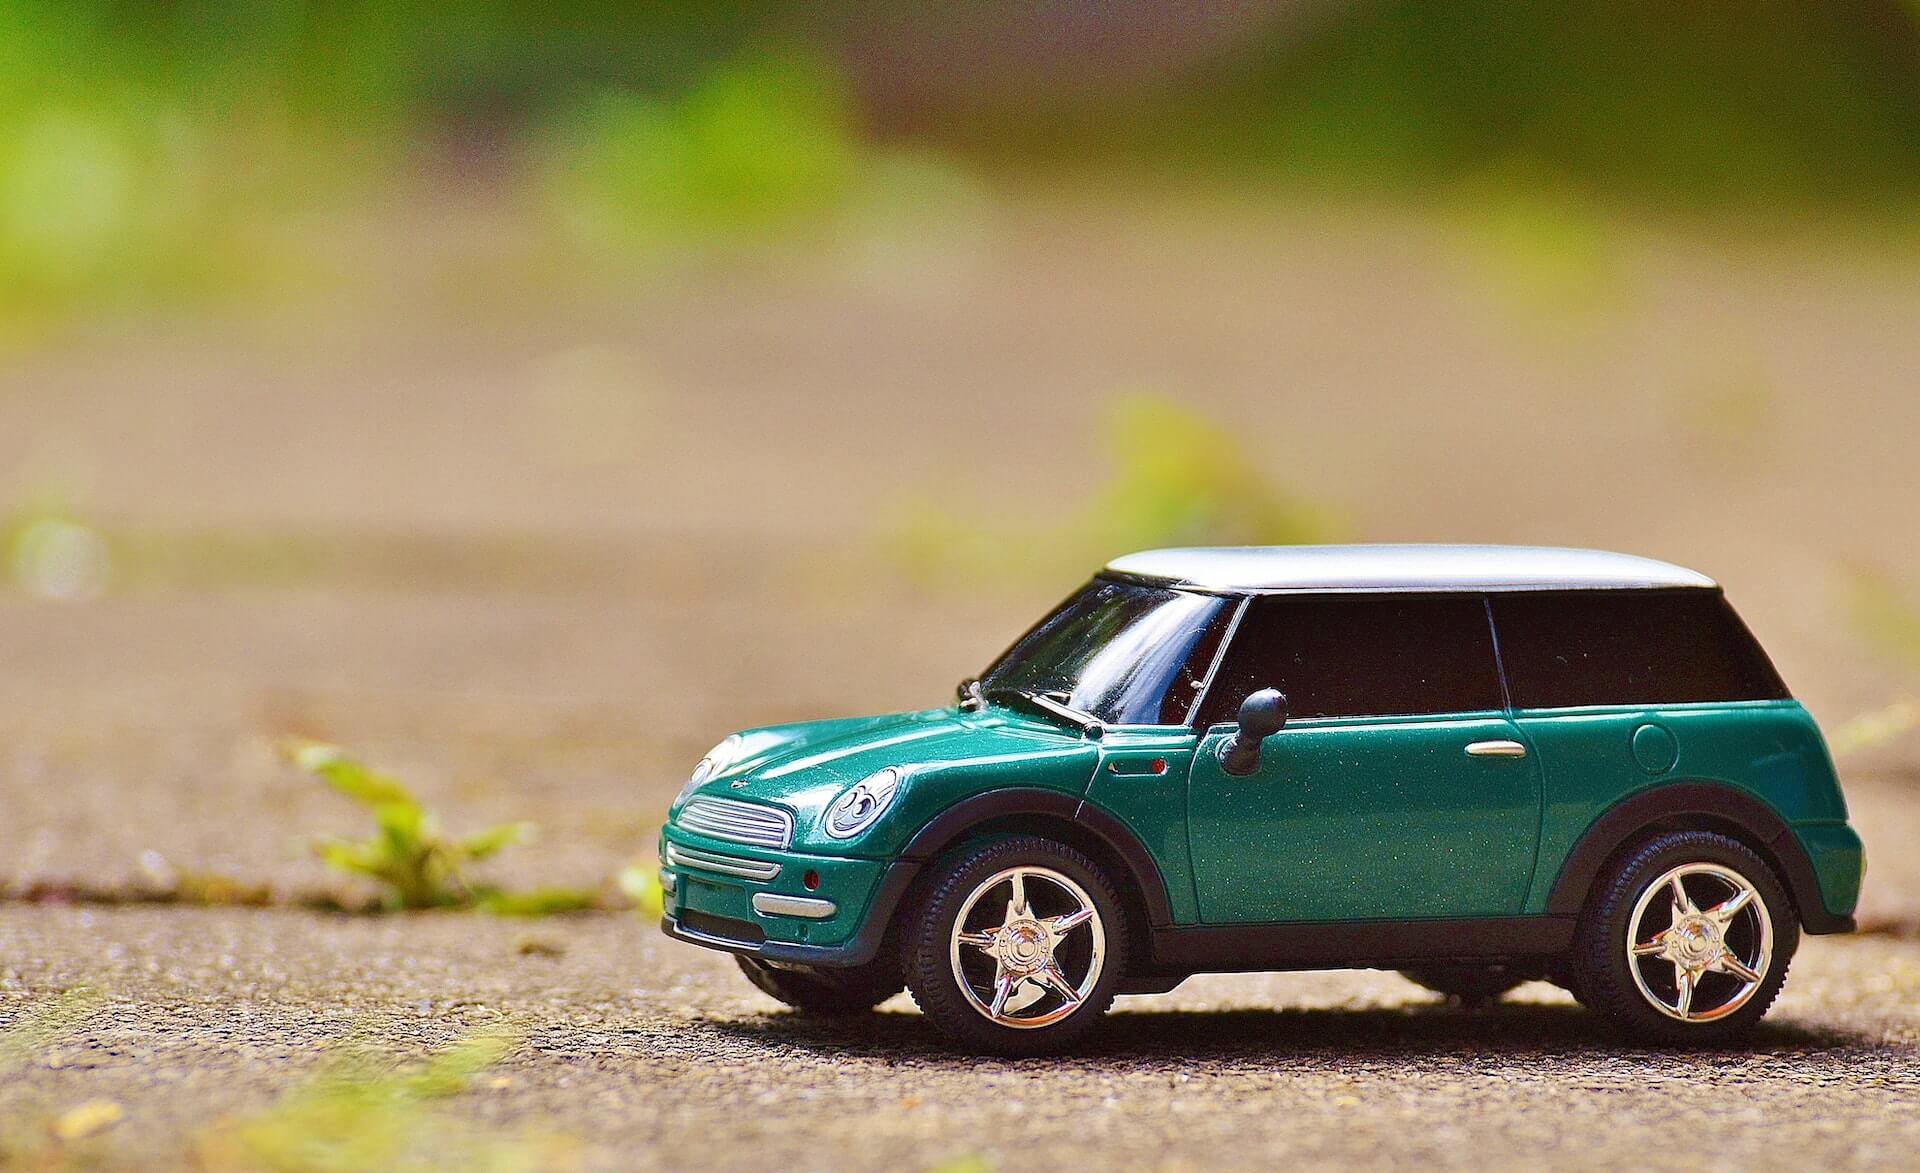 A miniature car that isn't taxed